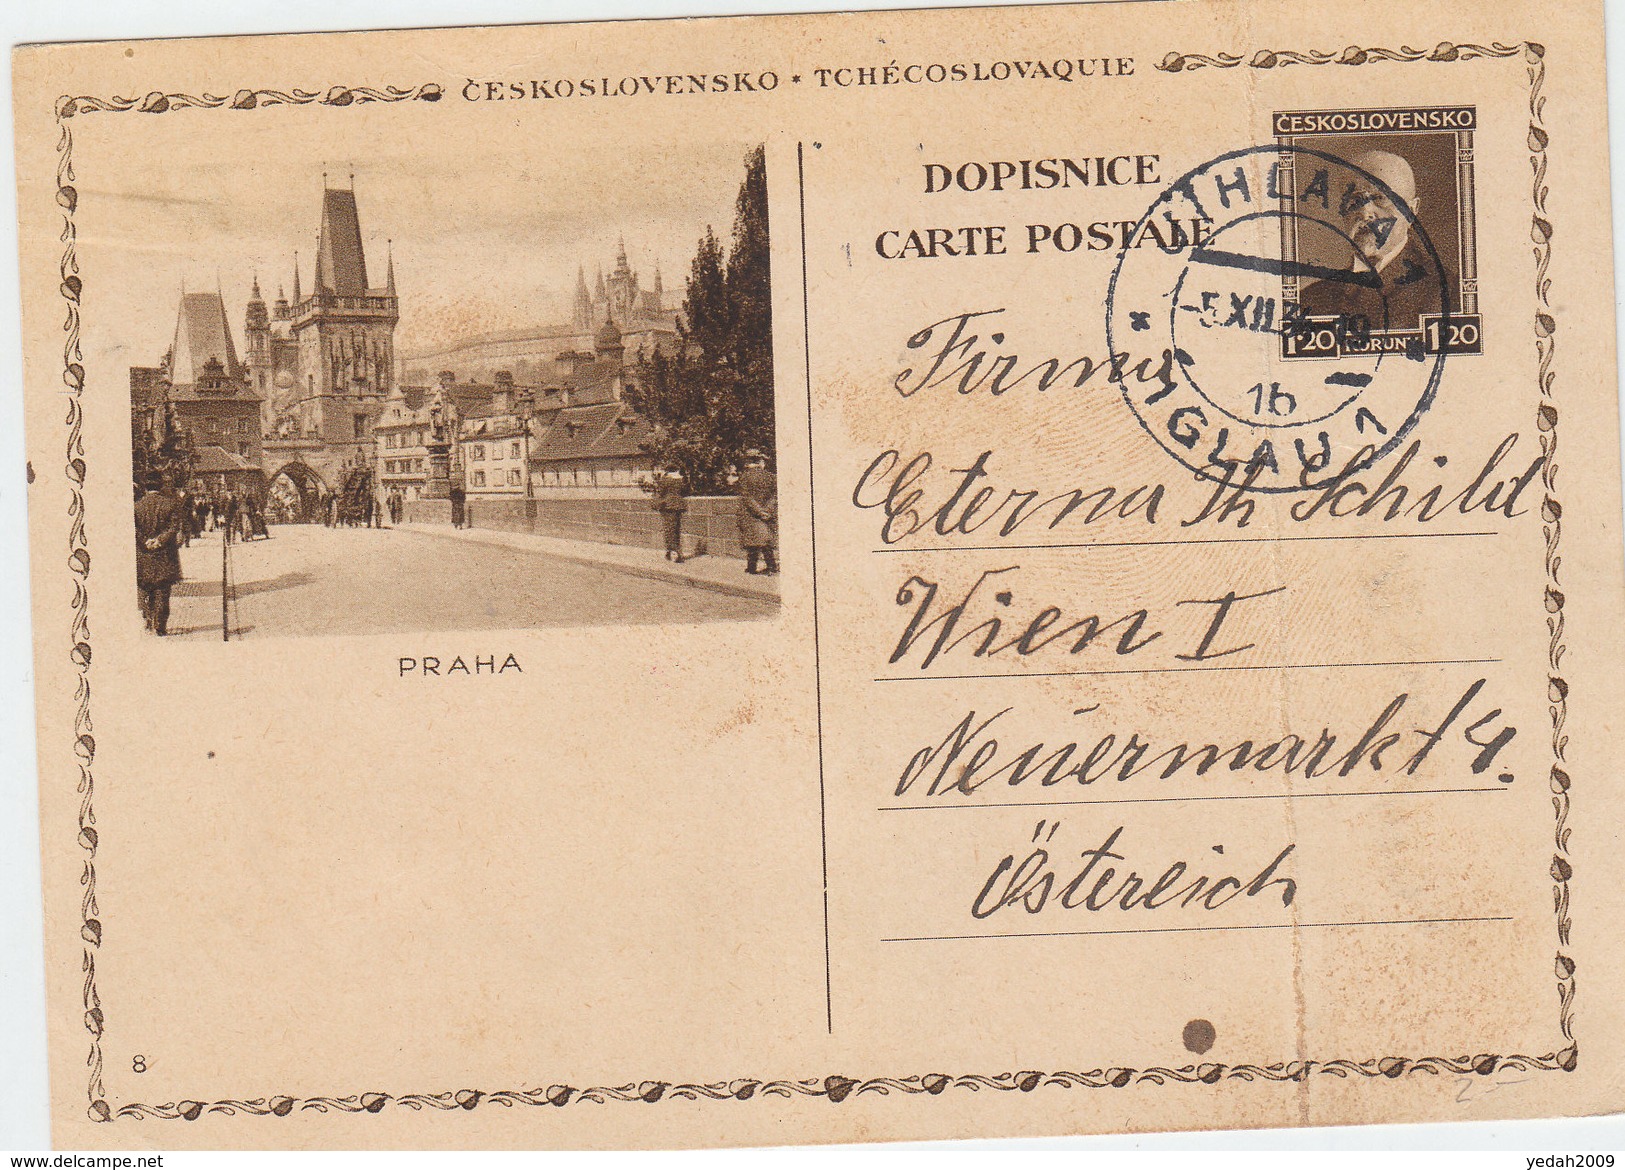 CZECHOSLOVAKIA POSTAL CARD  1934 - Covers